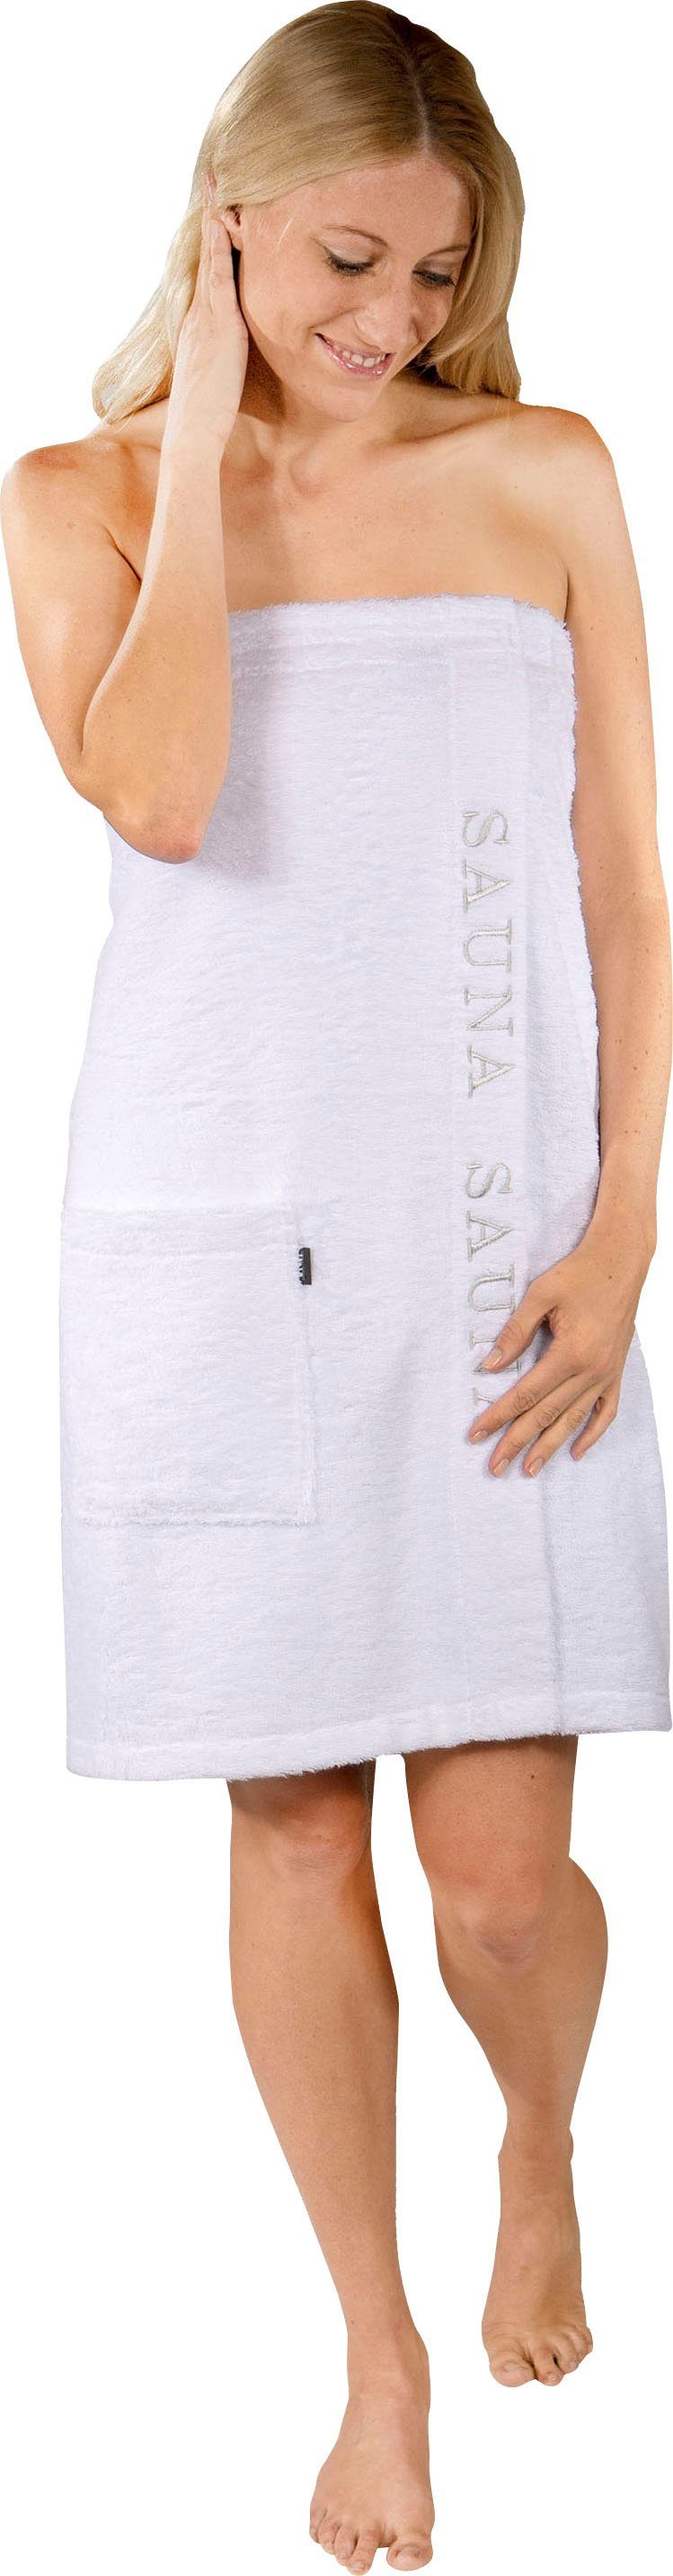 Kilt für Baumwolle, Damen, weiß Klettverschluss mit Wewo Saunakilt Stickerei fashion Klettverschluss, Sauna Langform, & 9534,